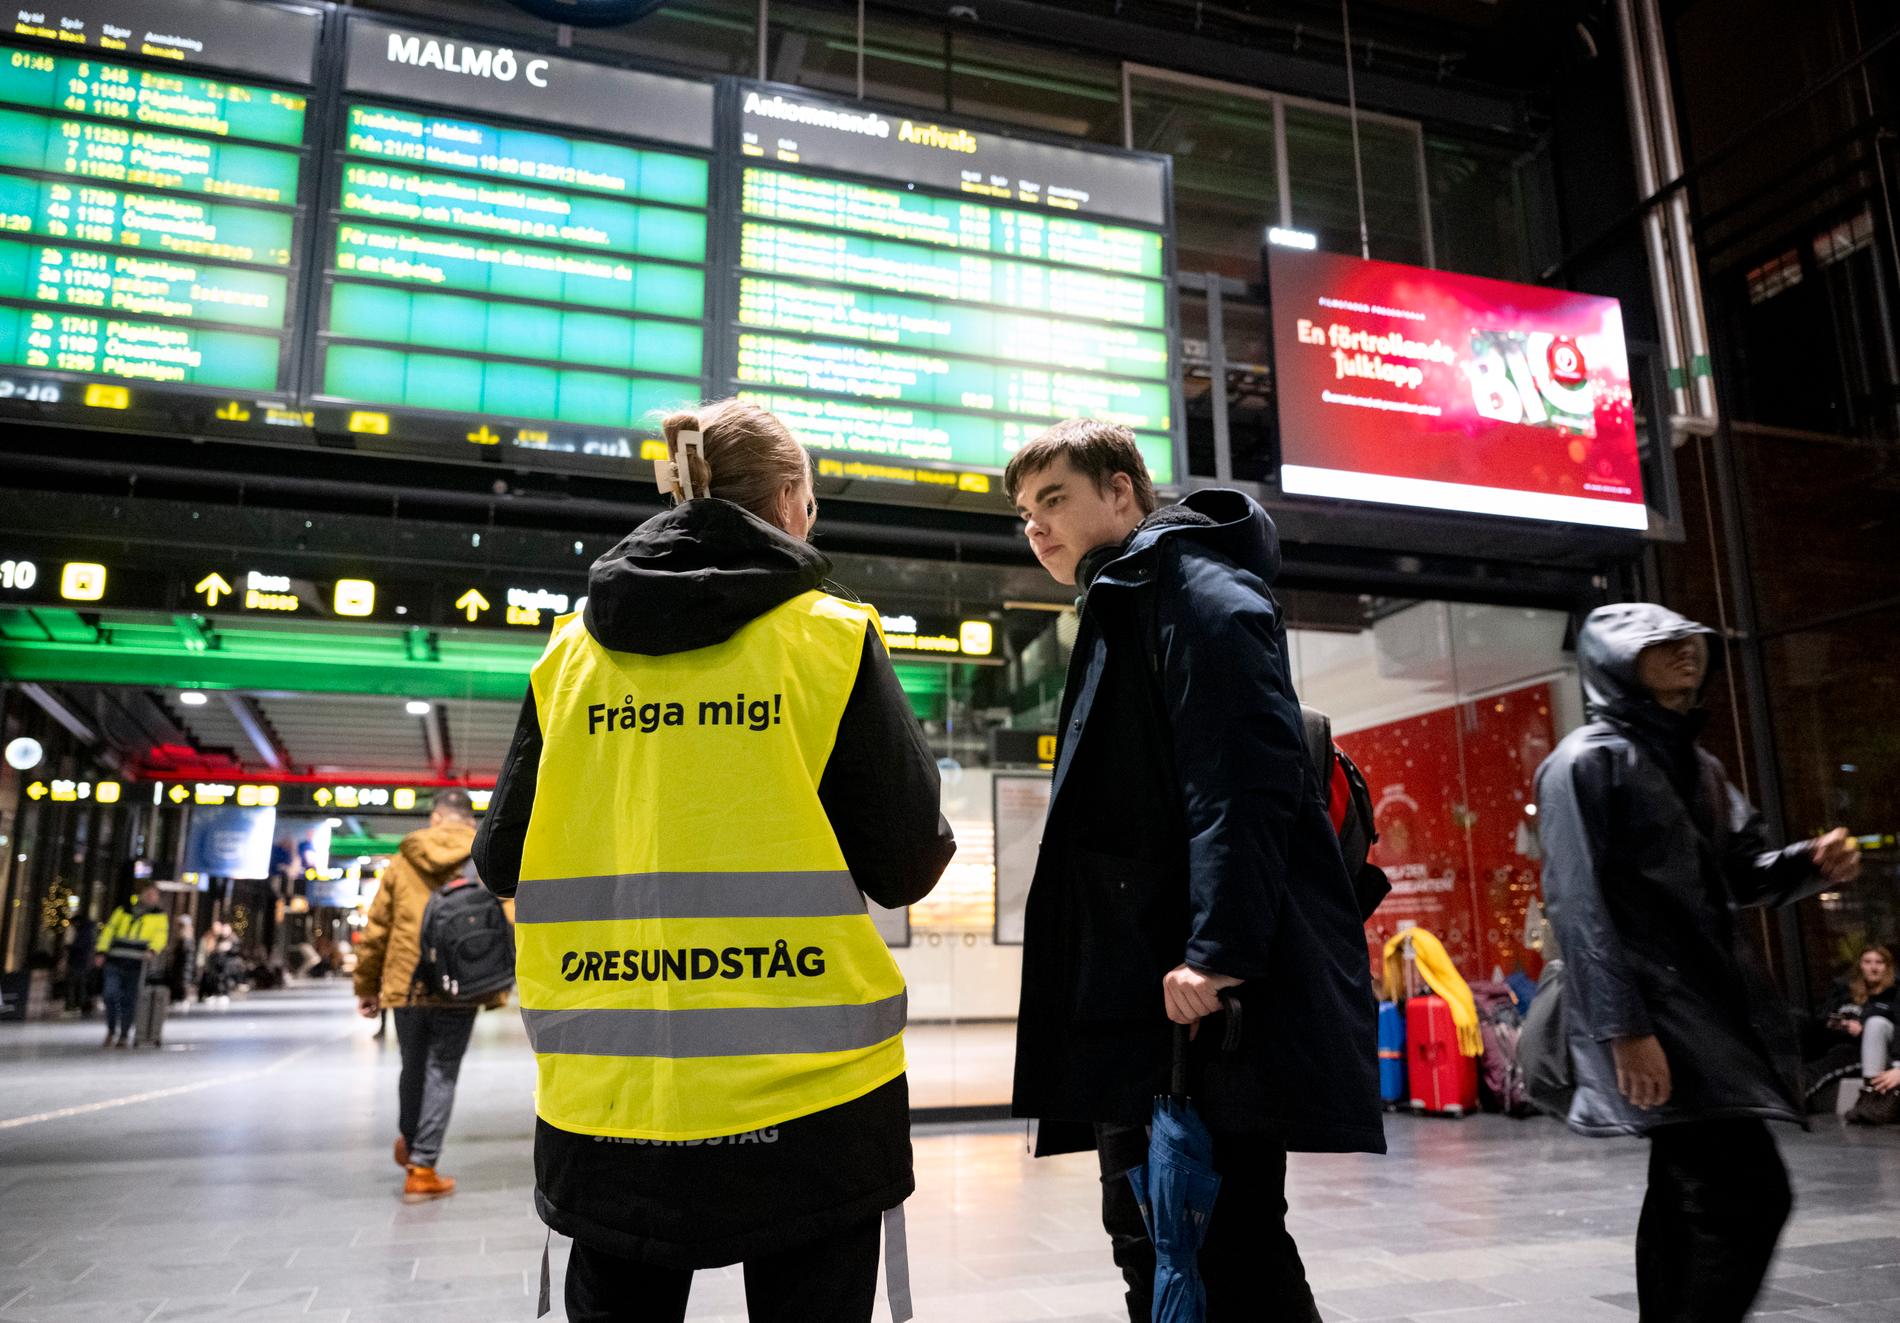 Passagerare på Malmö central väntar på besked.